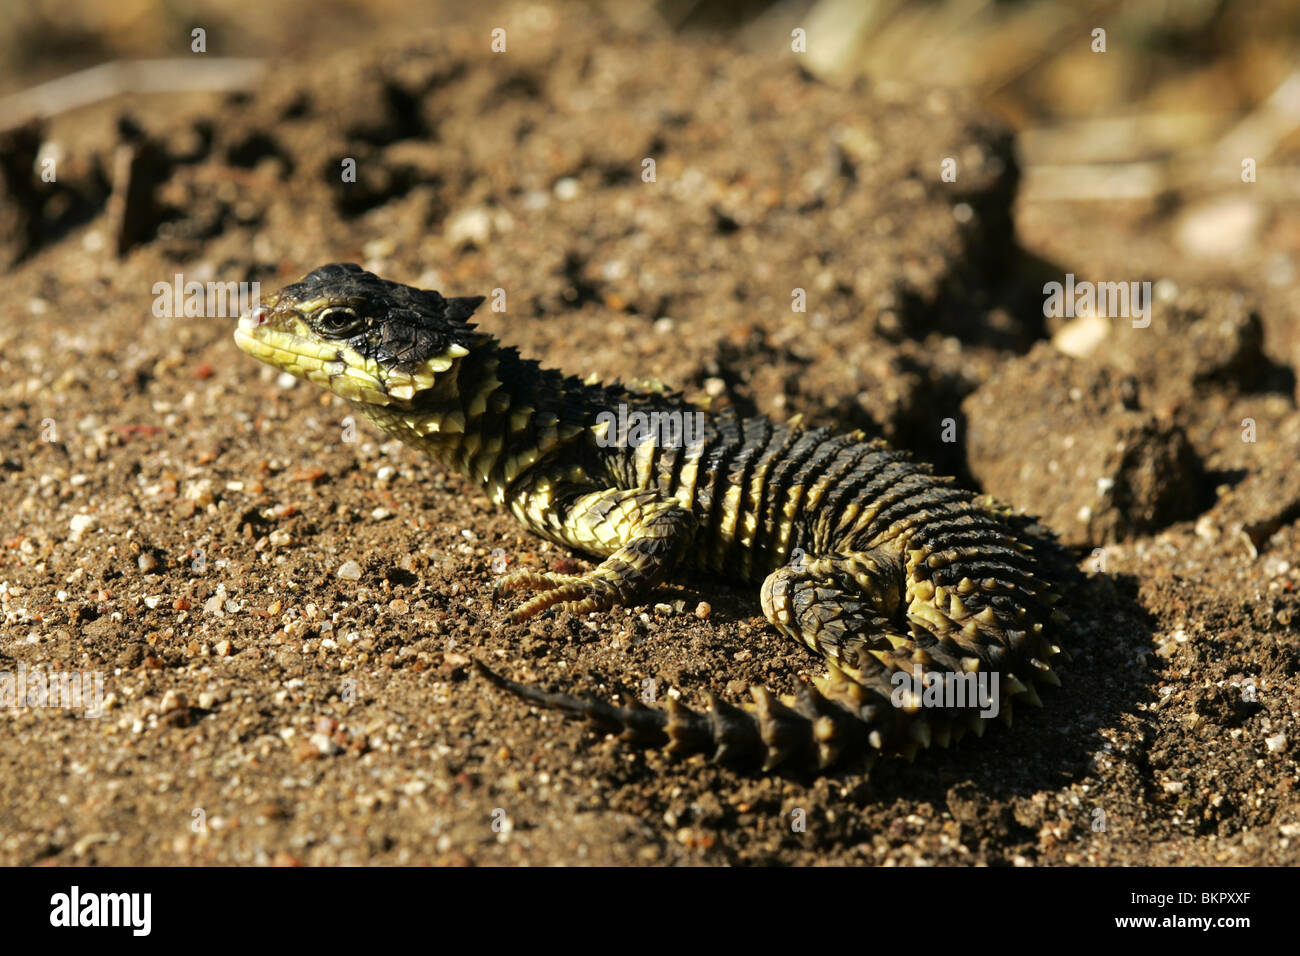 Sungazer Lizard, Afrique du Sud Banque D'Images